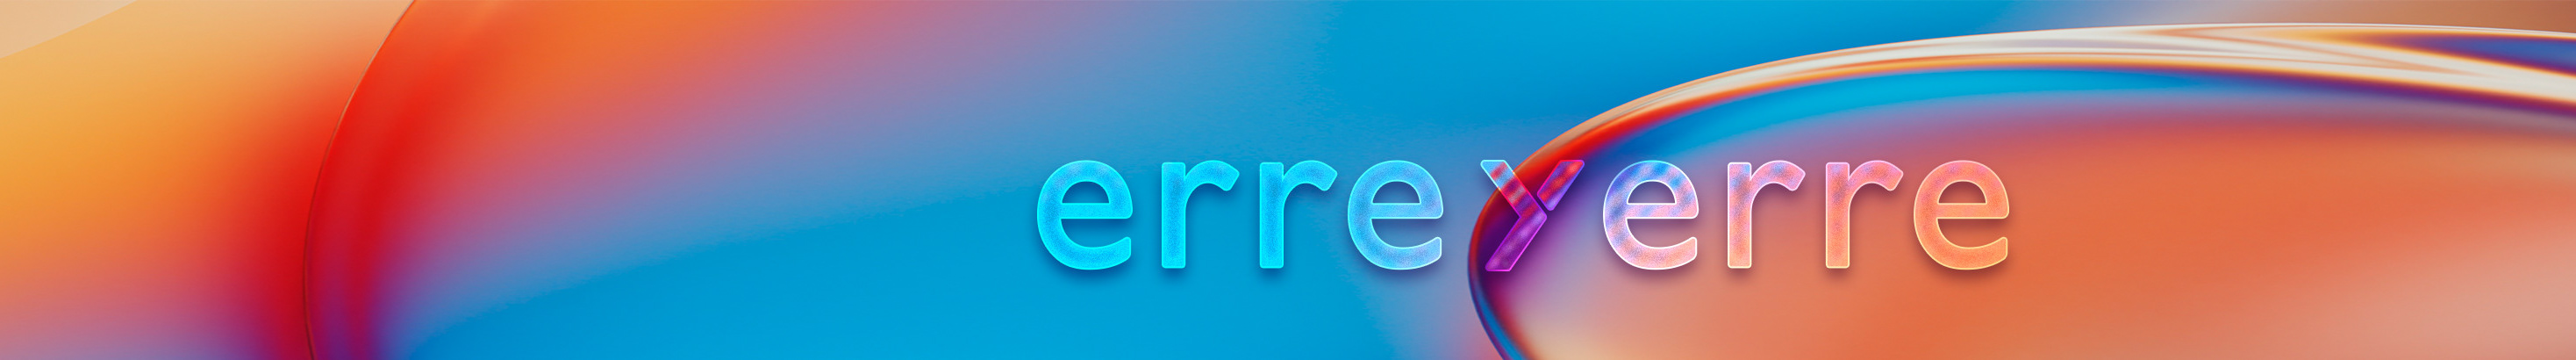 Agencia Erre y Erre's profile banner